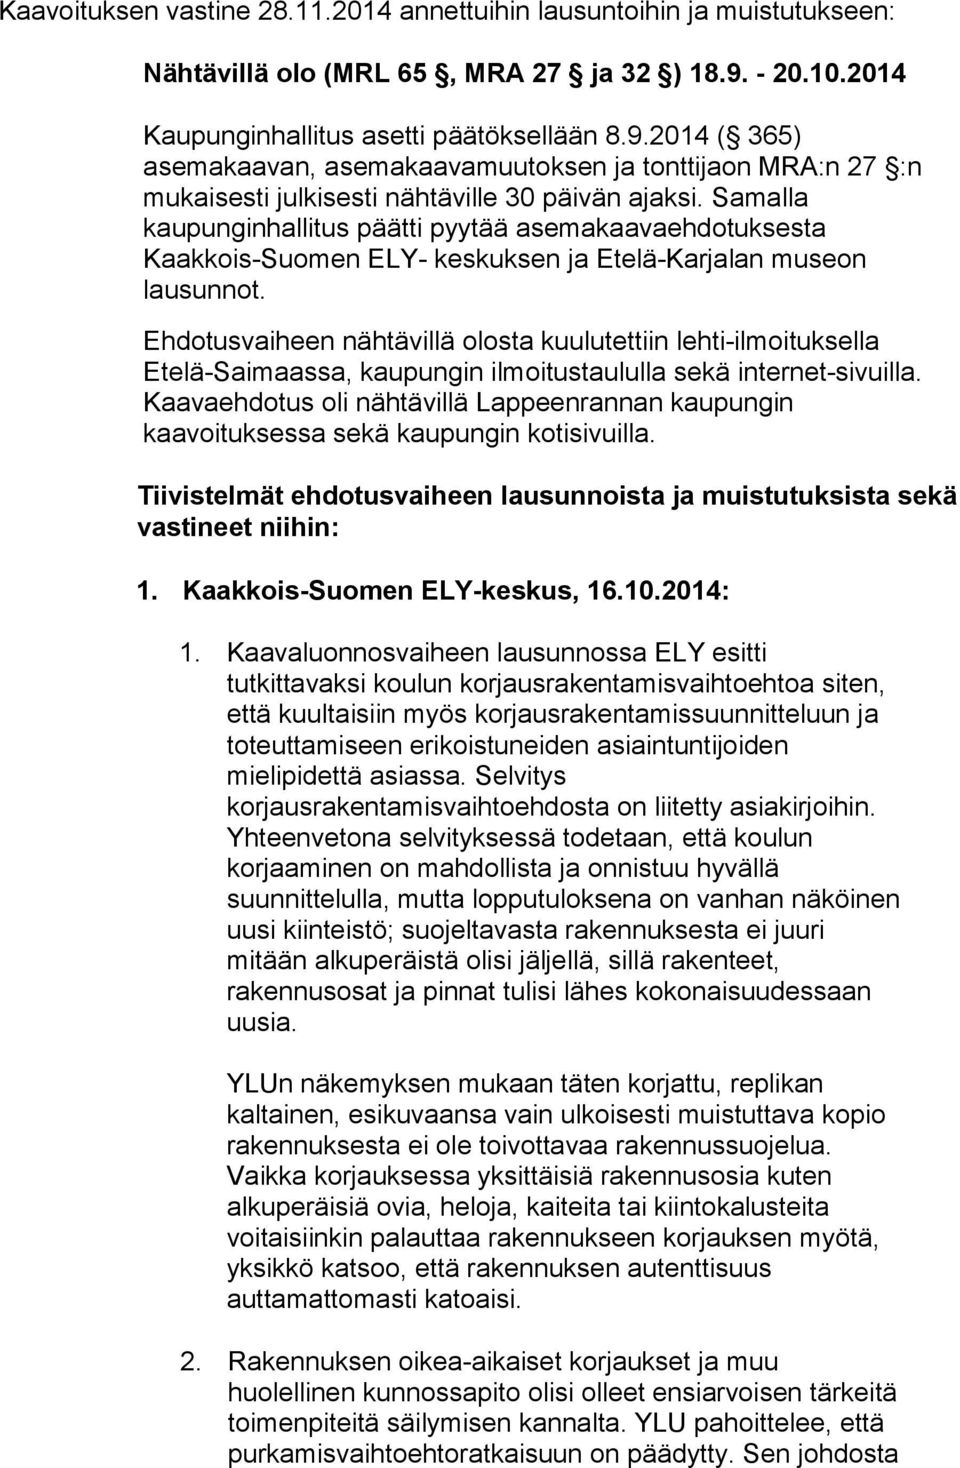 Samalla kaupunginhallitus päätti pyytää asemakaavaehdotuksesta Kaakkois-Suomen ELY- keskuksen ja Etelä-Karjalan museon lausunnot.